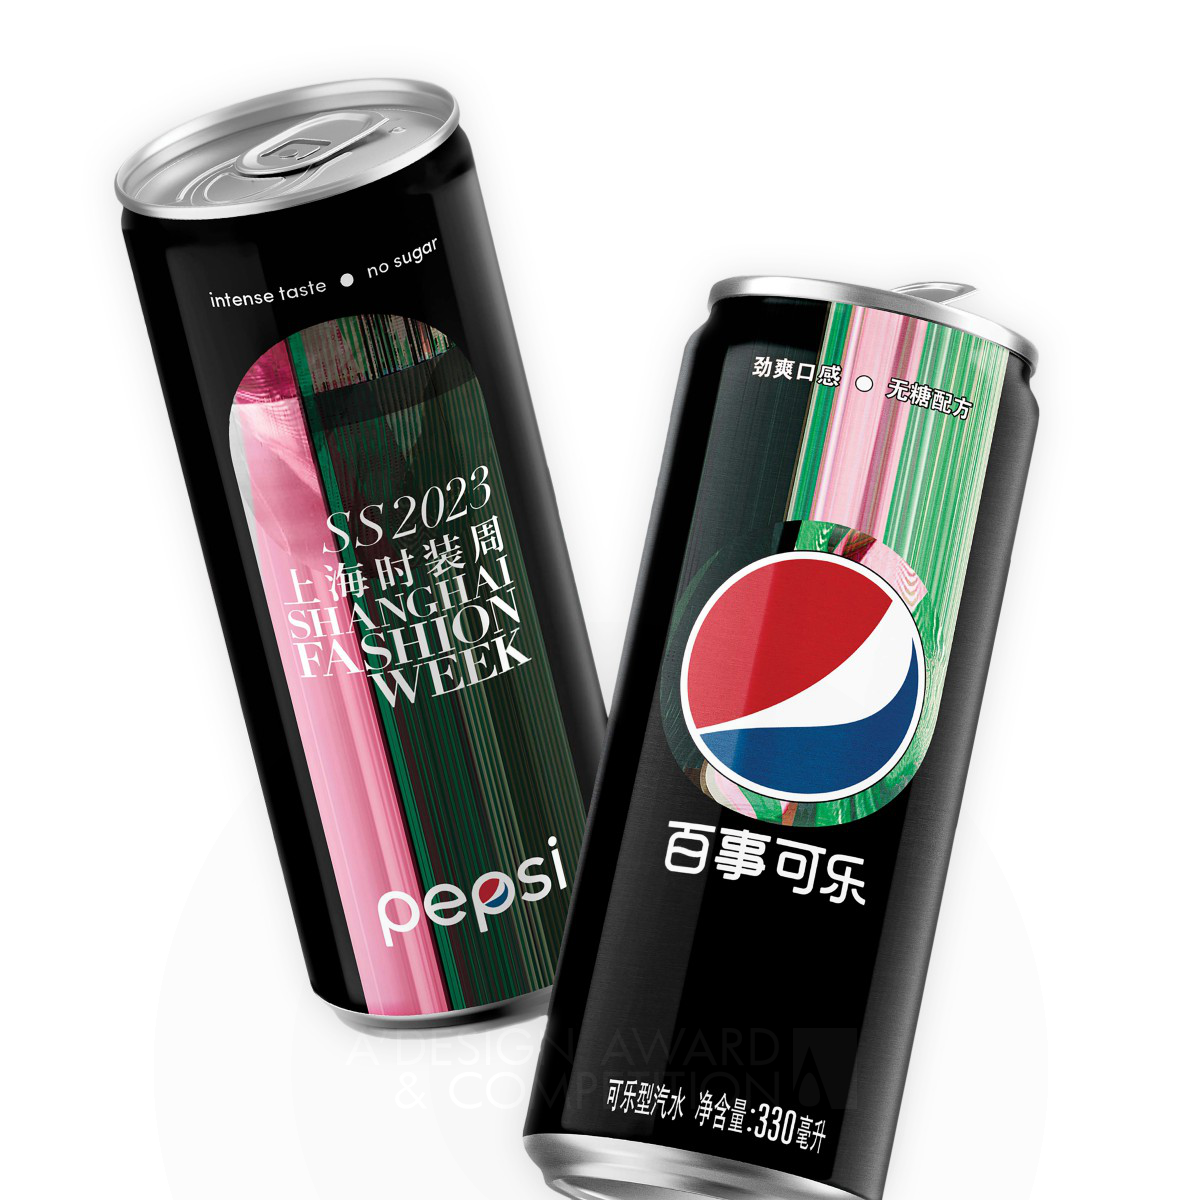 Pepsi Black x Digital Shanghai FW 2023 Beverage Packaging by PepsiCo Design & Innovation